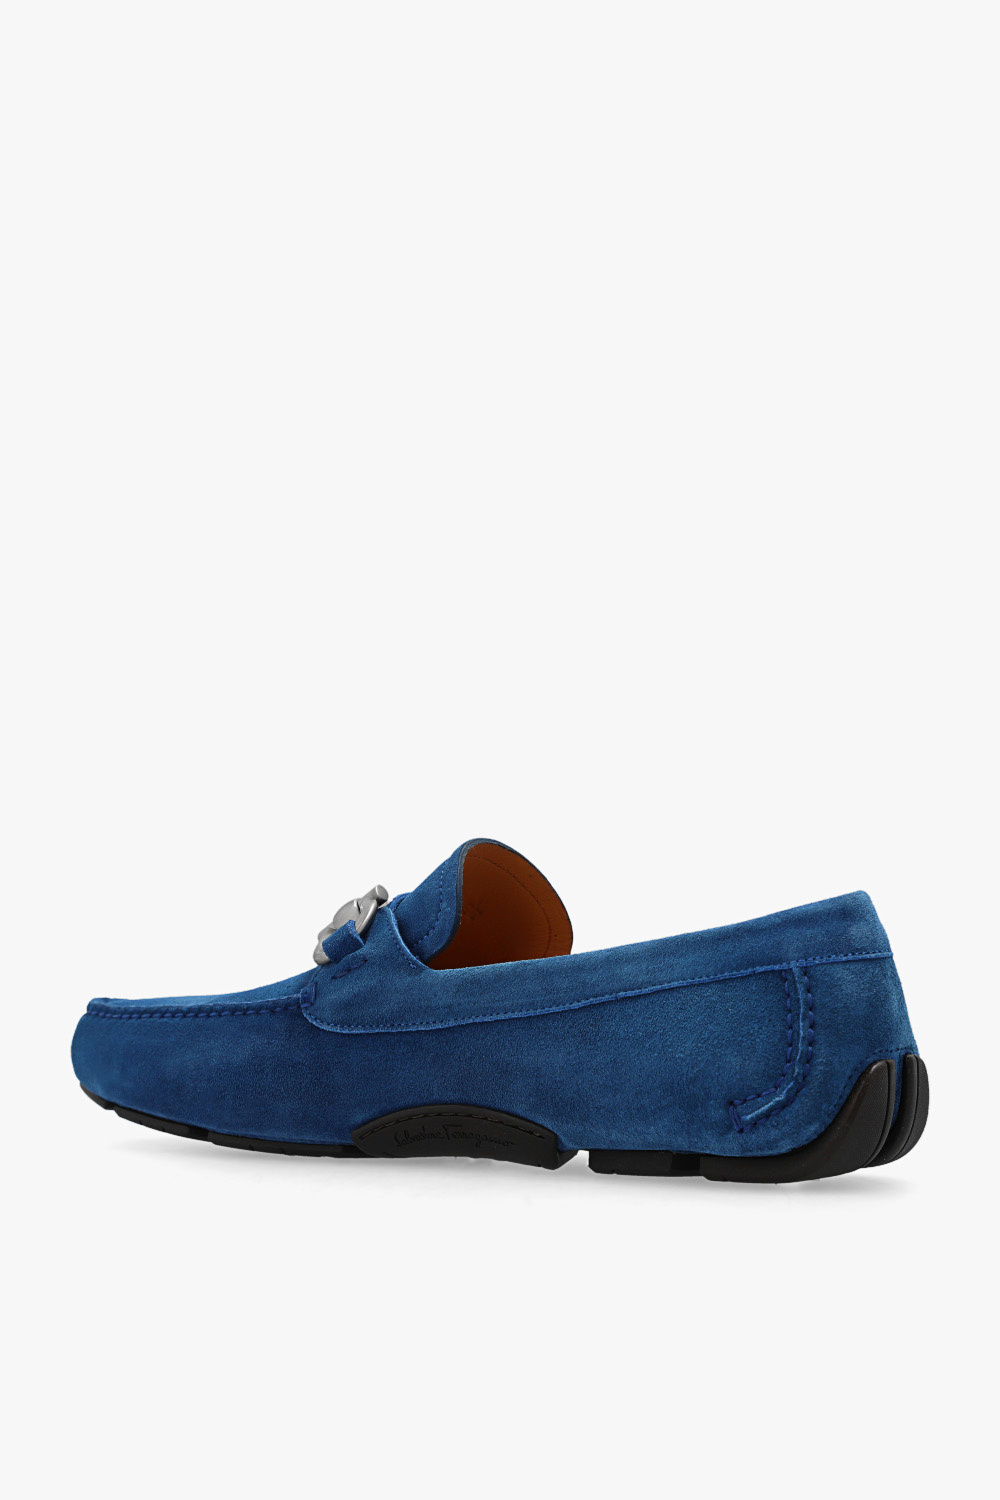 FERRAGAMO ‘Parigi’ leather tal shoes